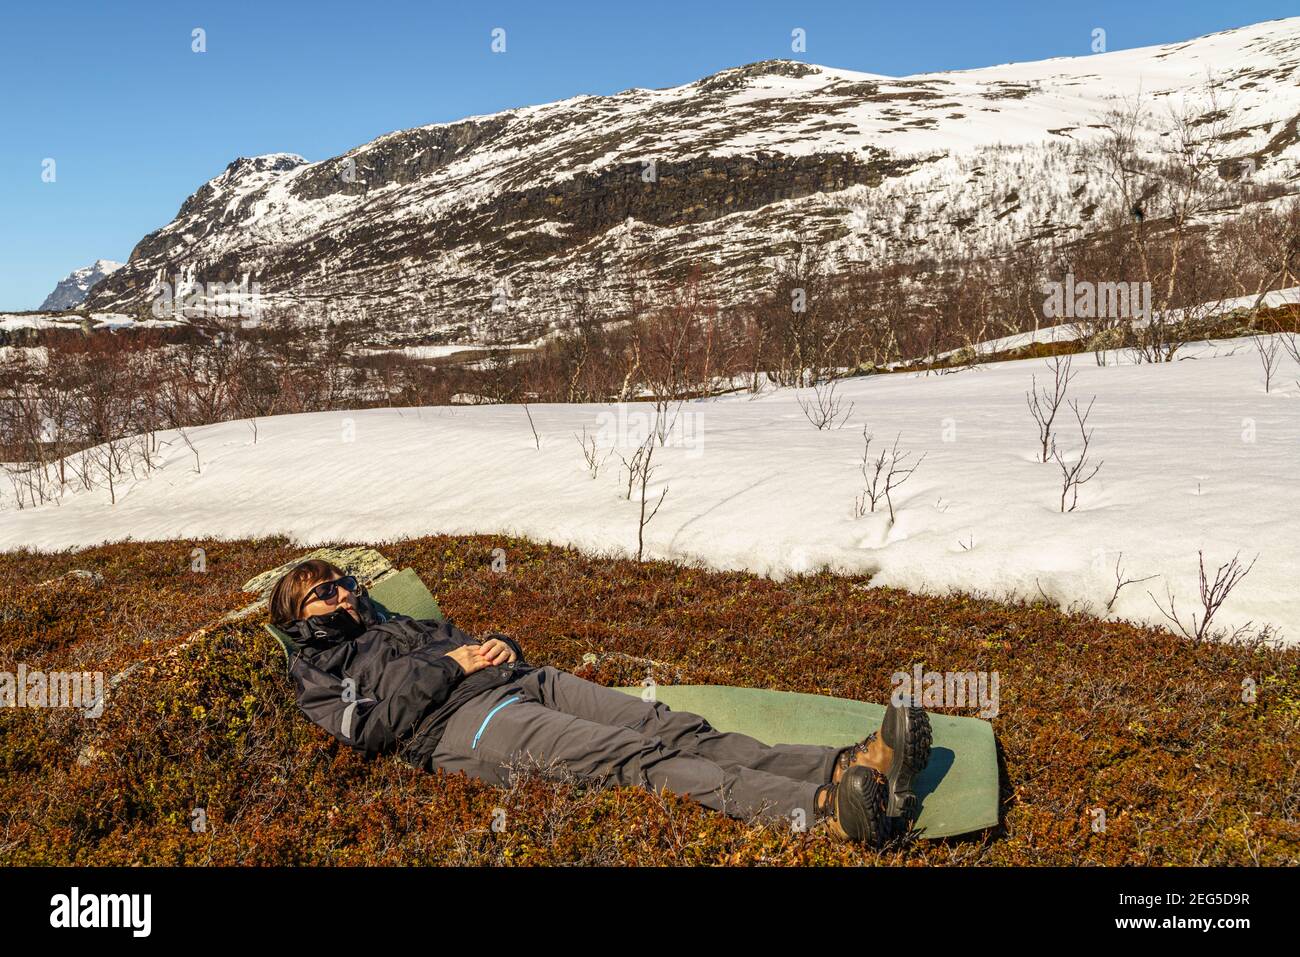 Femme couché au printemps dans la région montagneuse du parc national Stora sjöfallets avec de la neige autour et sur les montagnes, la Laponie suédoise, Swed Banque D'Images